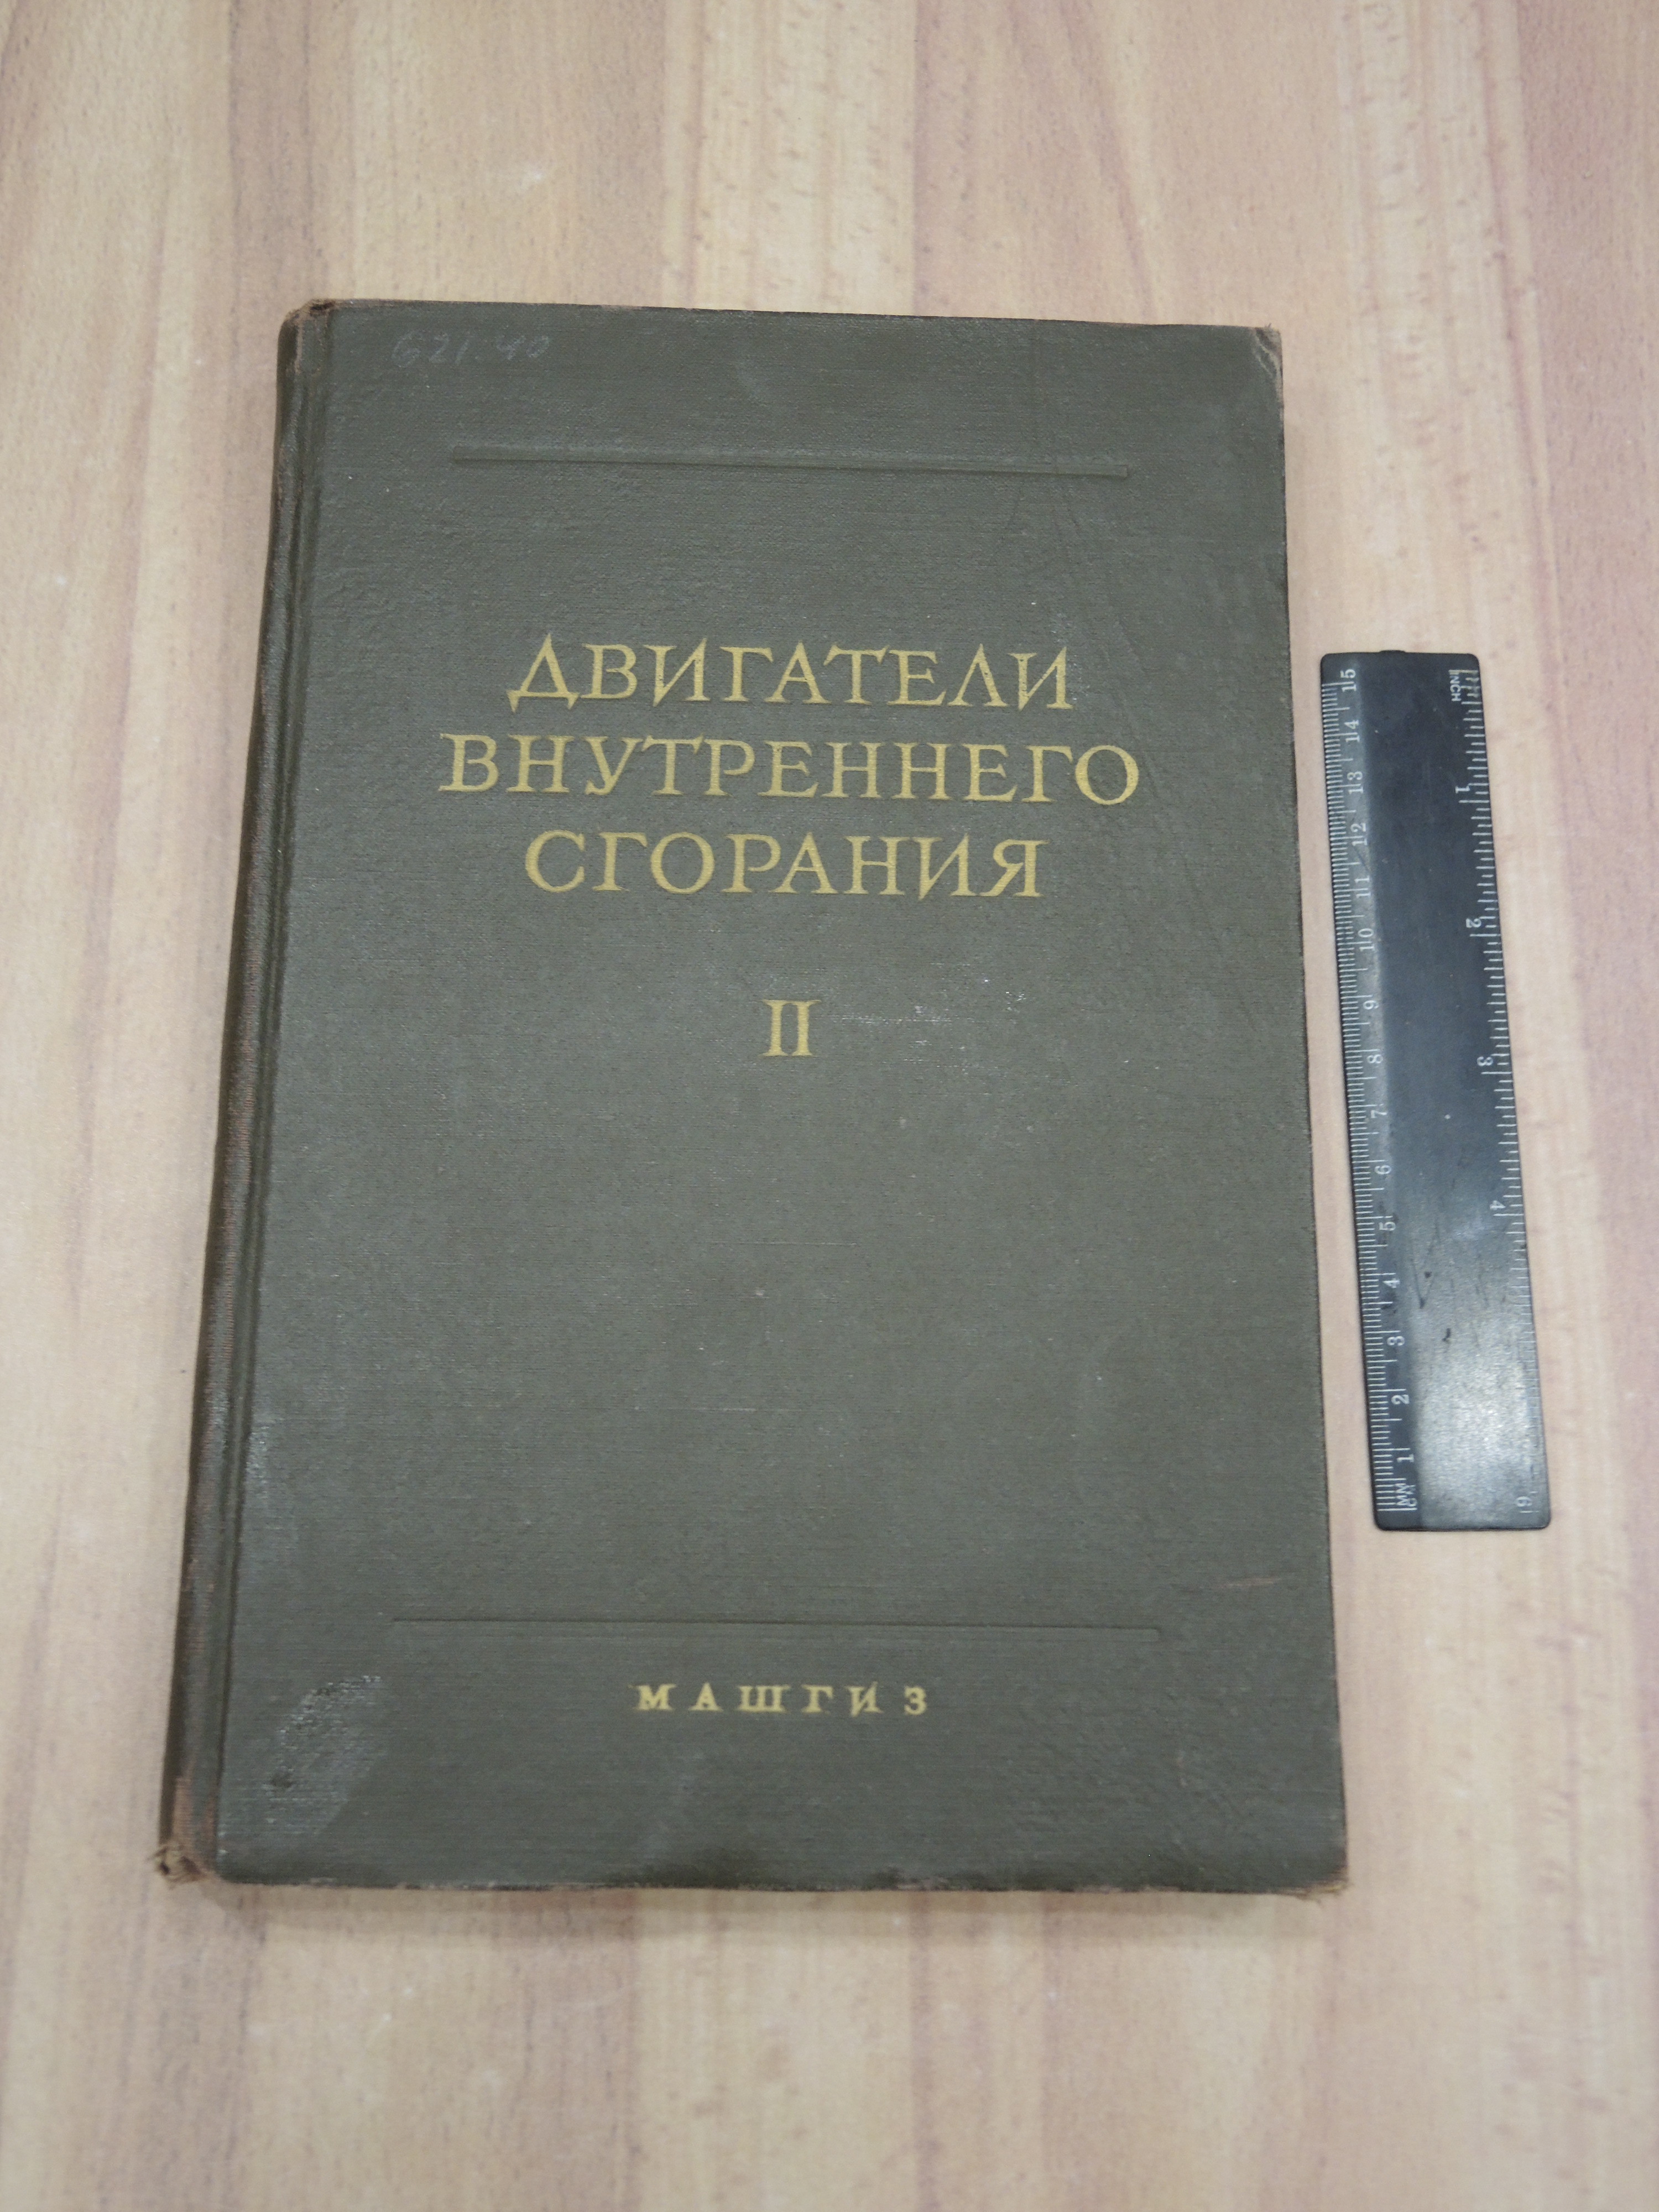 книга двигатели внутреннего сгорания машгиз конструкция и расчет машиностроение СССР 1962 г.